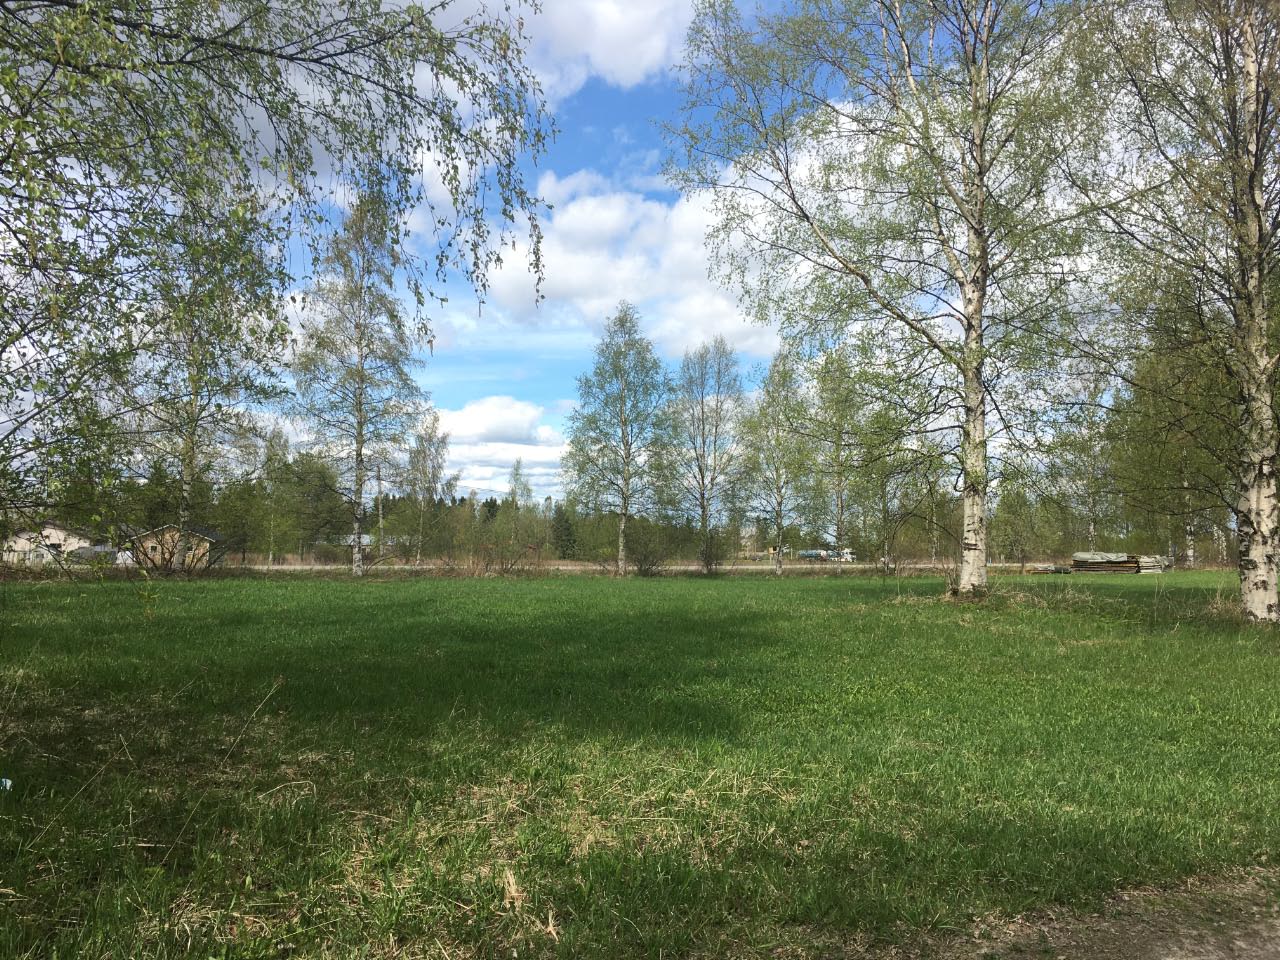 Kuva: Kalmistoalue kuvattuna kohti Ylemmäisentietä. Kuopion kulttuurihistoriallinen museo. CC BY 4.0 Tytti Räikkönen 29.5.2020